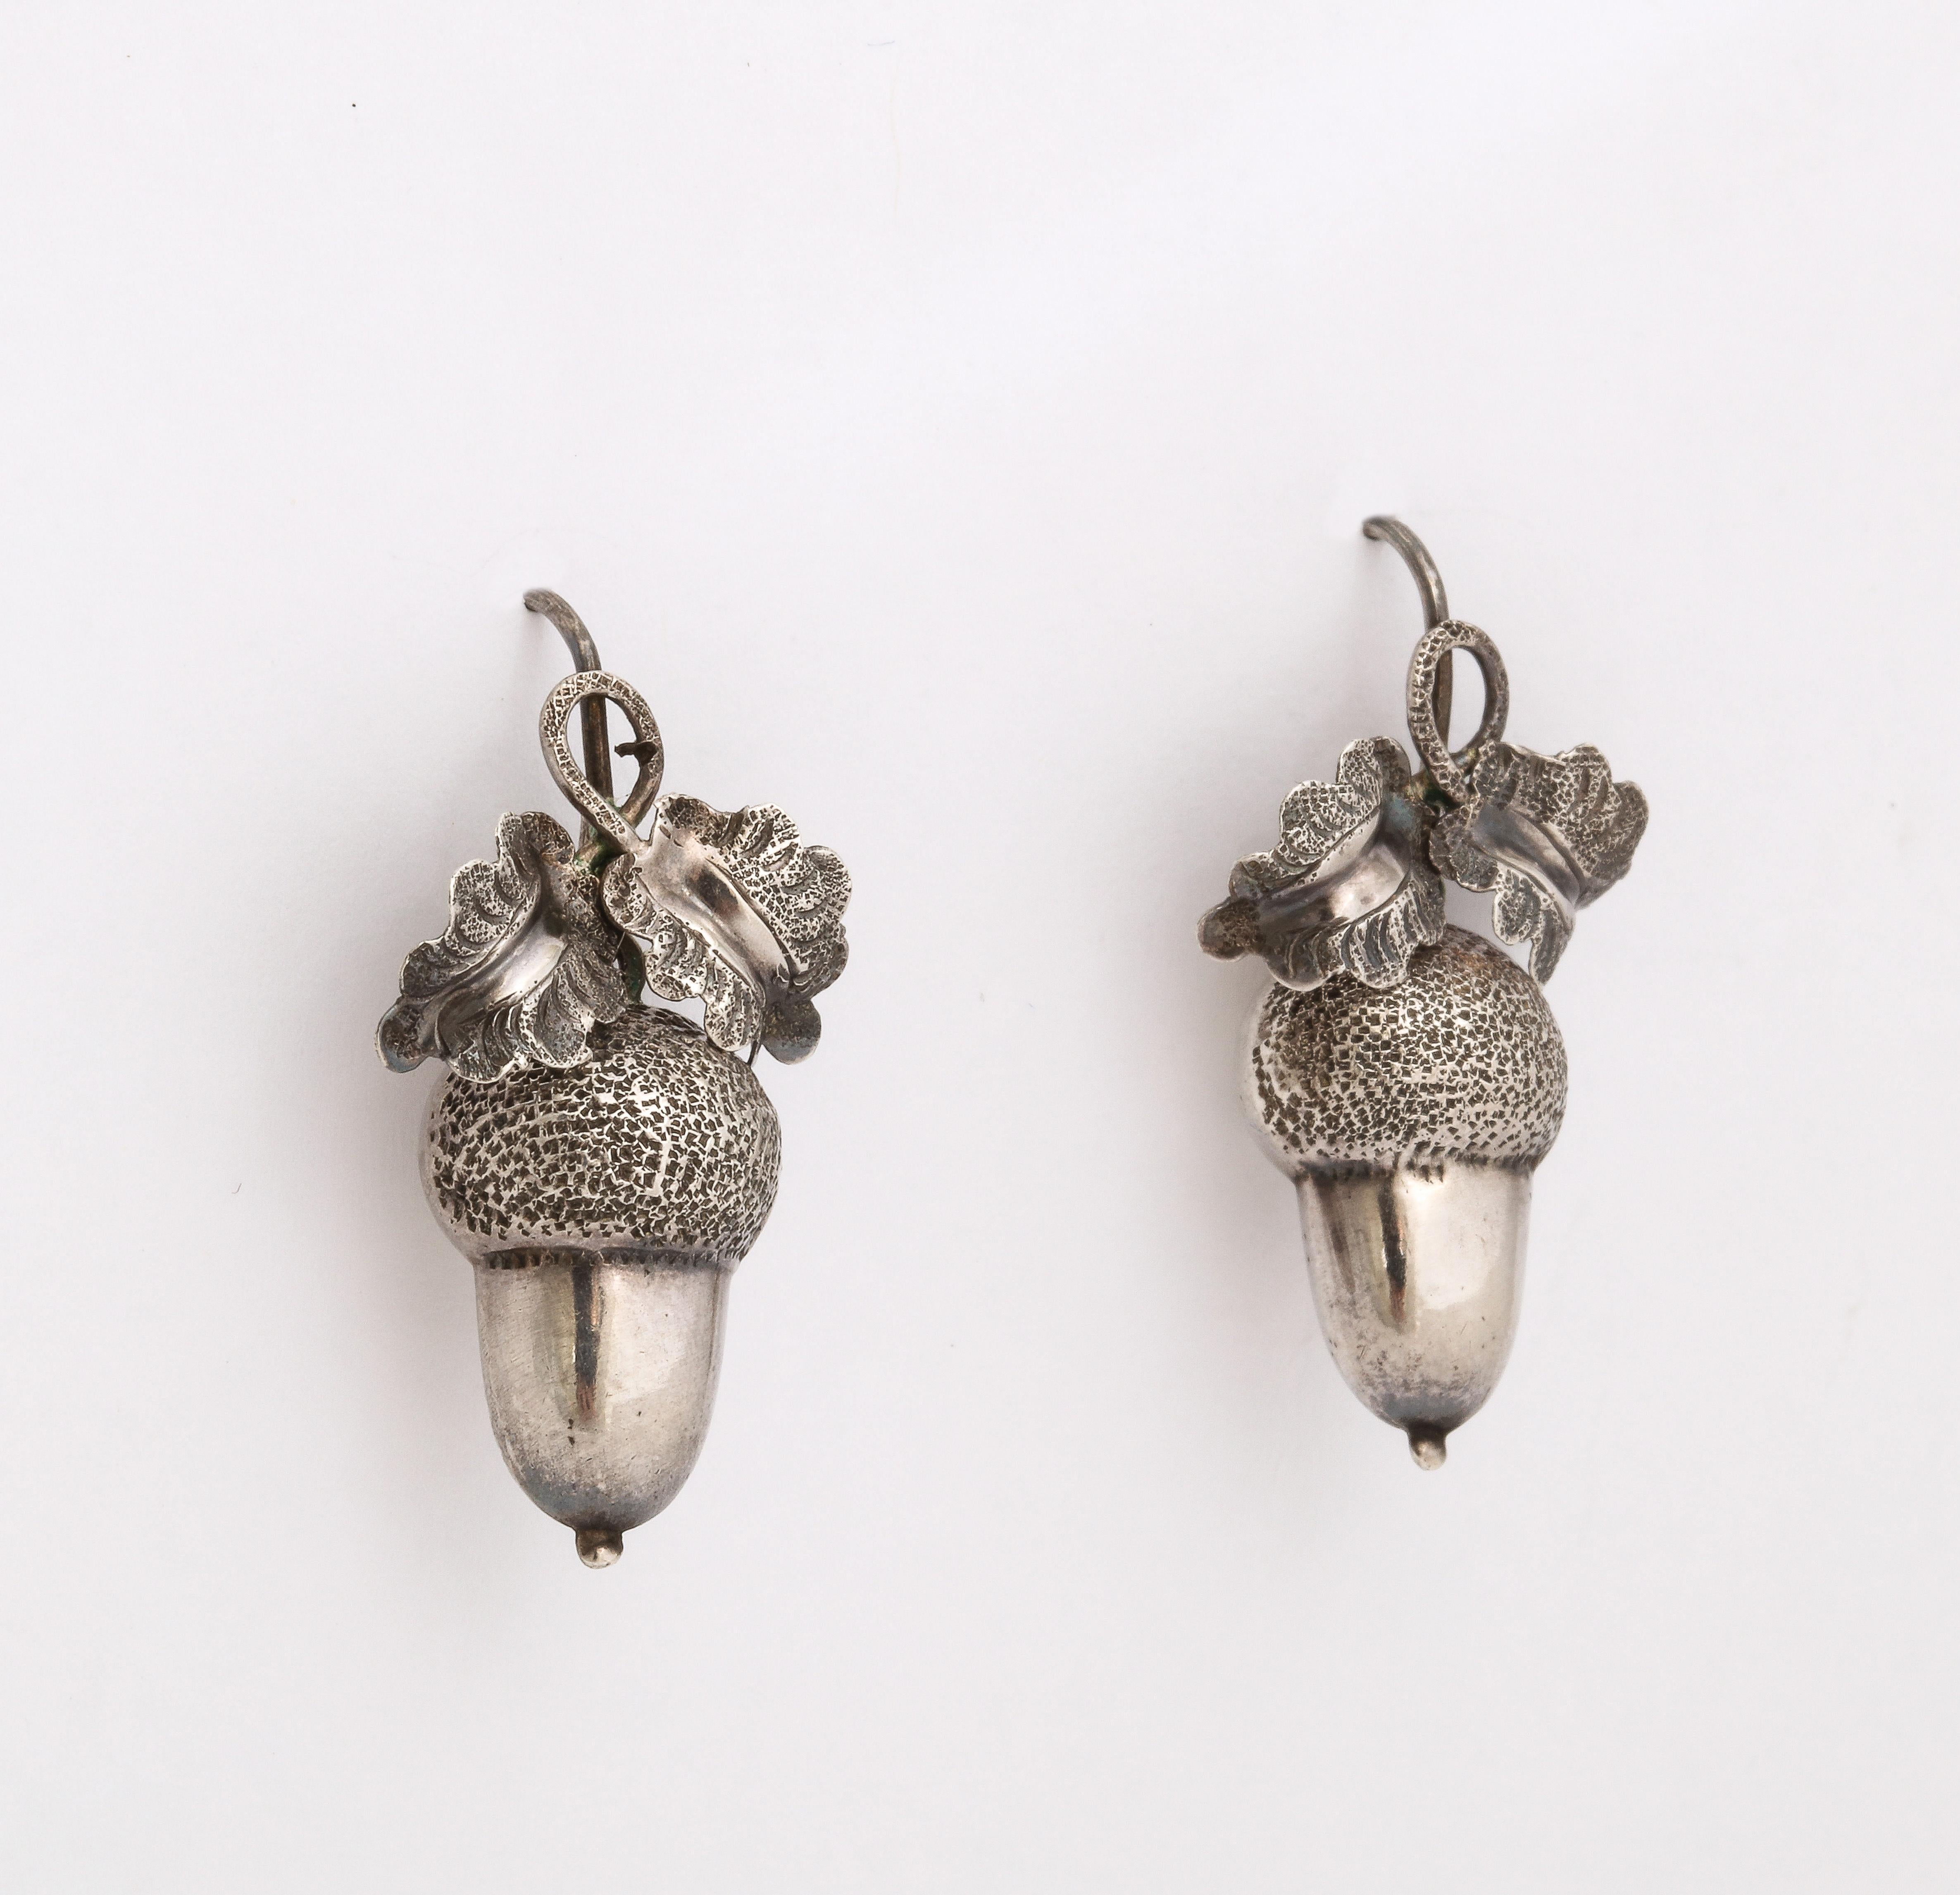 Aus der. mächtigen Eiche entspringt die kleine Eichel - das ist der Geist dieser viktorianischen Eichel-Ohrringe aus Silber.
Stabilität, Stärke, Wachstum und Wohlstand - das ist die Symbolik der Eichel. Vielleicht ist das der Grund, warum